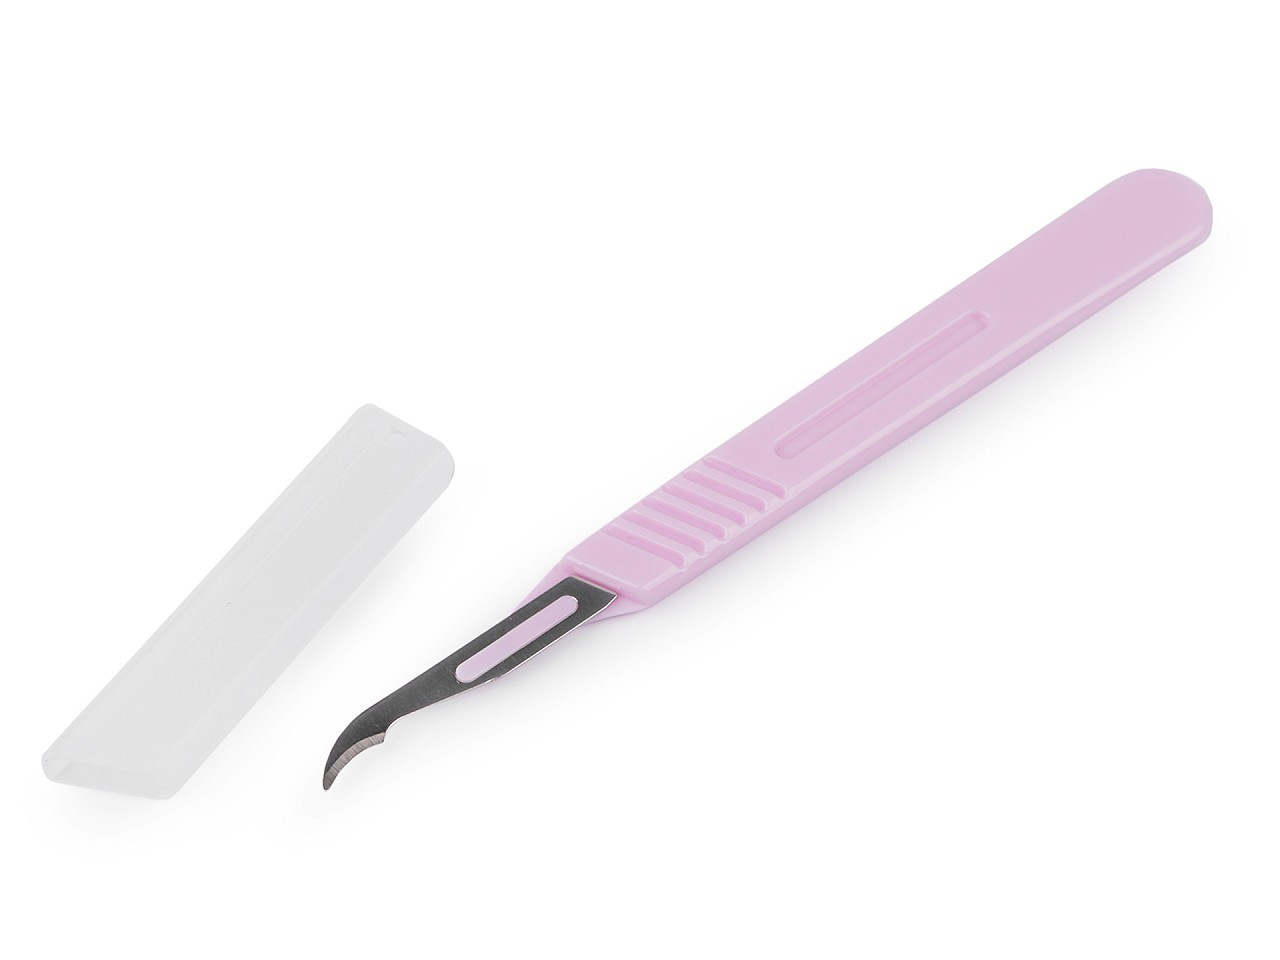 Páráček / nůž délka 14,5 cm, barva fialovorůžová světlá